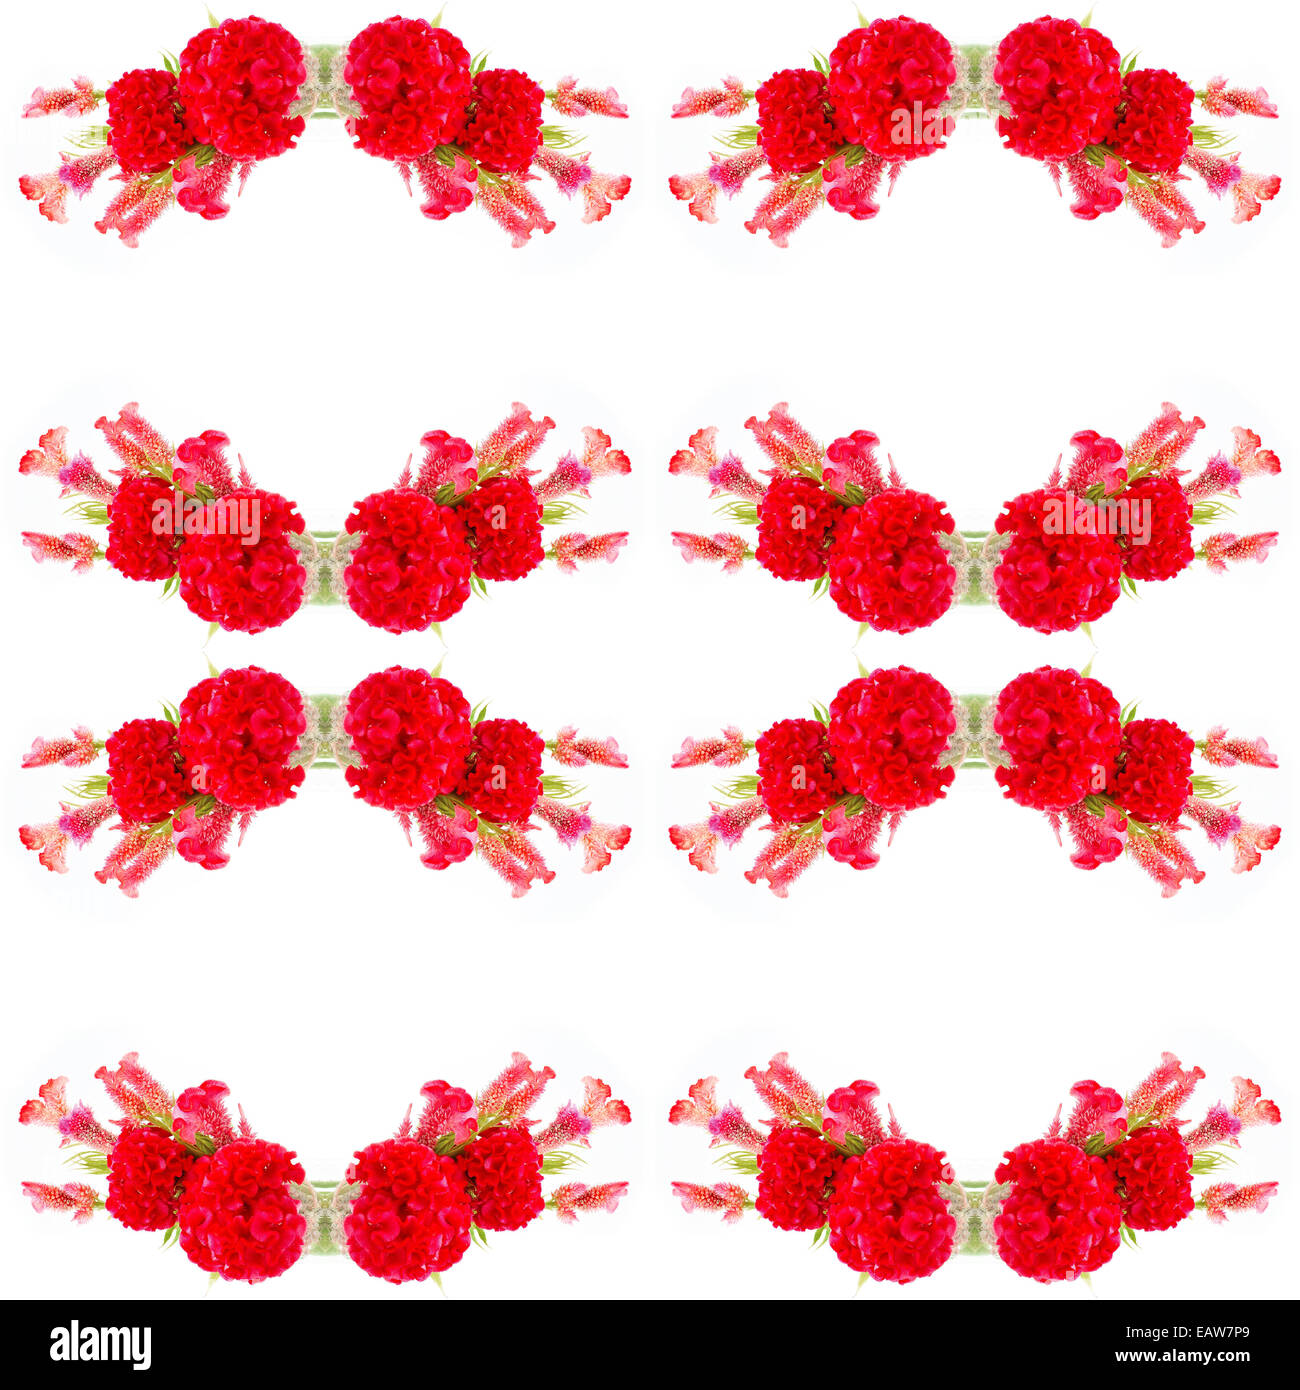 Fleur rouge, Cockscomb ou fleur de laine chinois (Celosia argentea), isolé sur fond blanc Banque D'Images